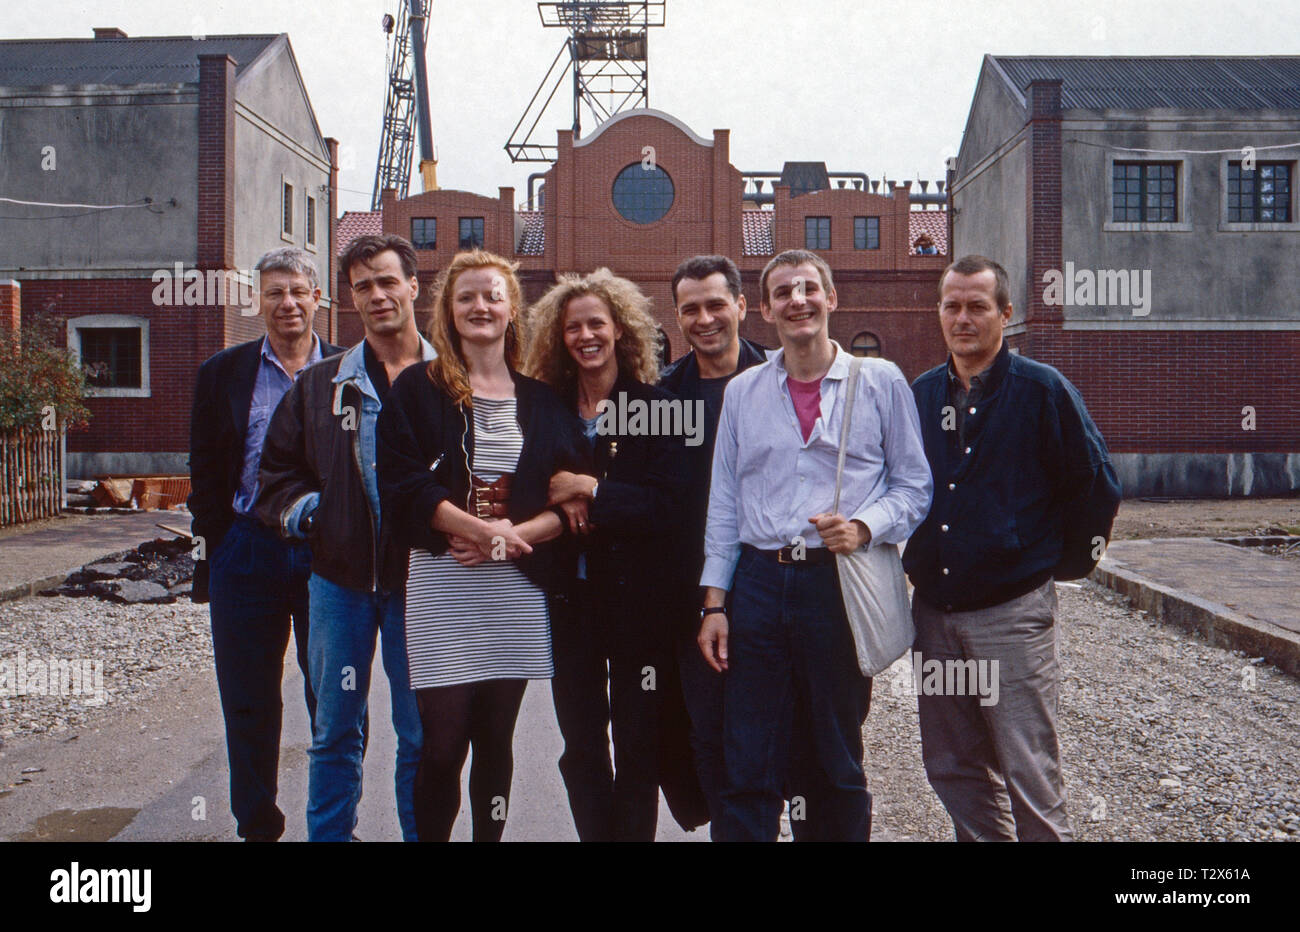 Rote Erde, Fernsehserie, Deutschland 1983: Hansa Czypionka Darsteller, Nina Petri, Klaus j. Behrendt, Margarita Broich, Max Herbrechter Foto de stock